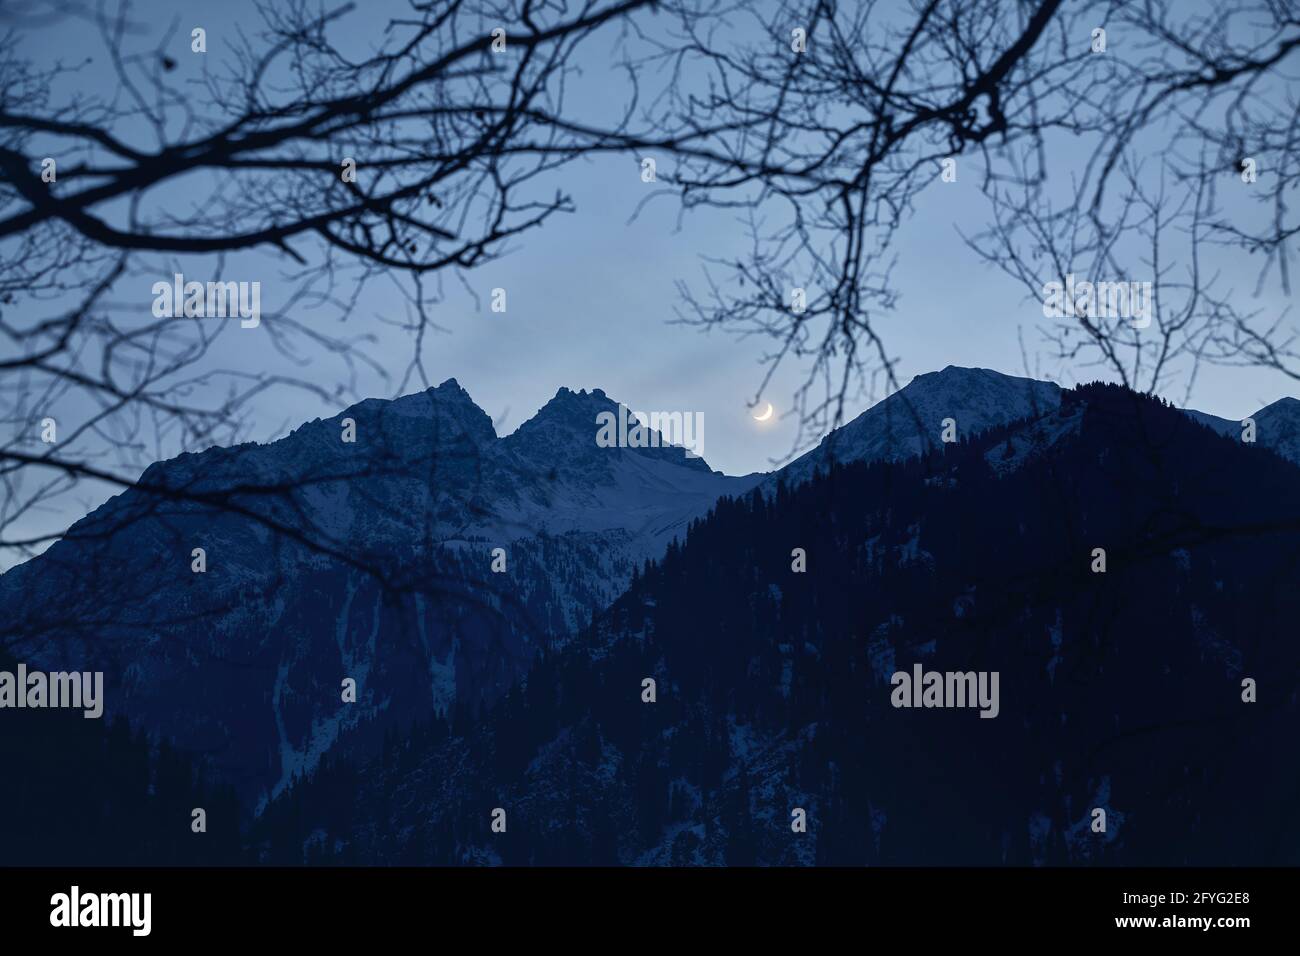 Magnifique paysage de montagnes White Peaks sous le ciel de nuit plein d'étoiles avec lune en hiver Banque D'Images